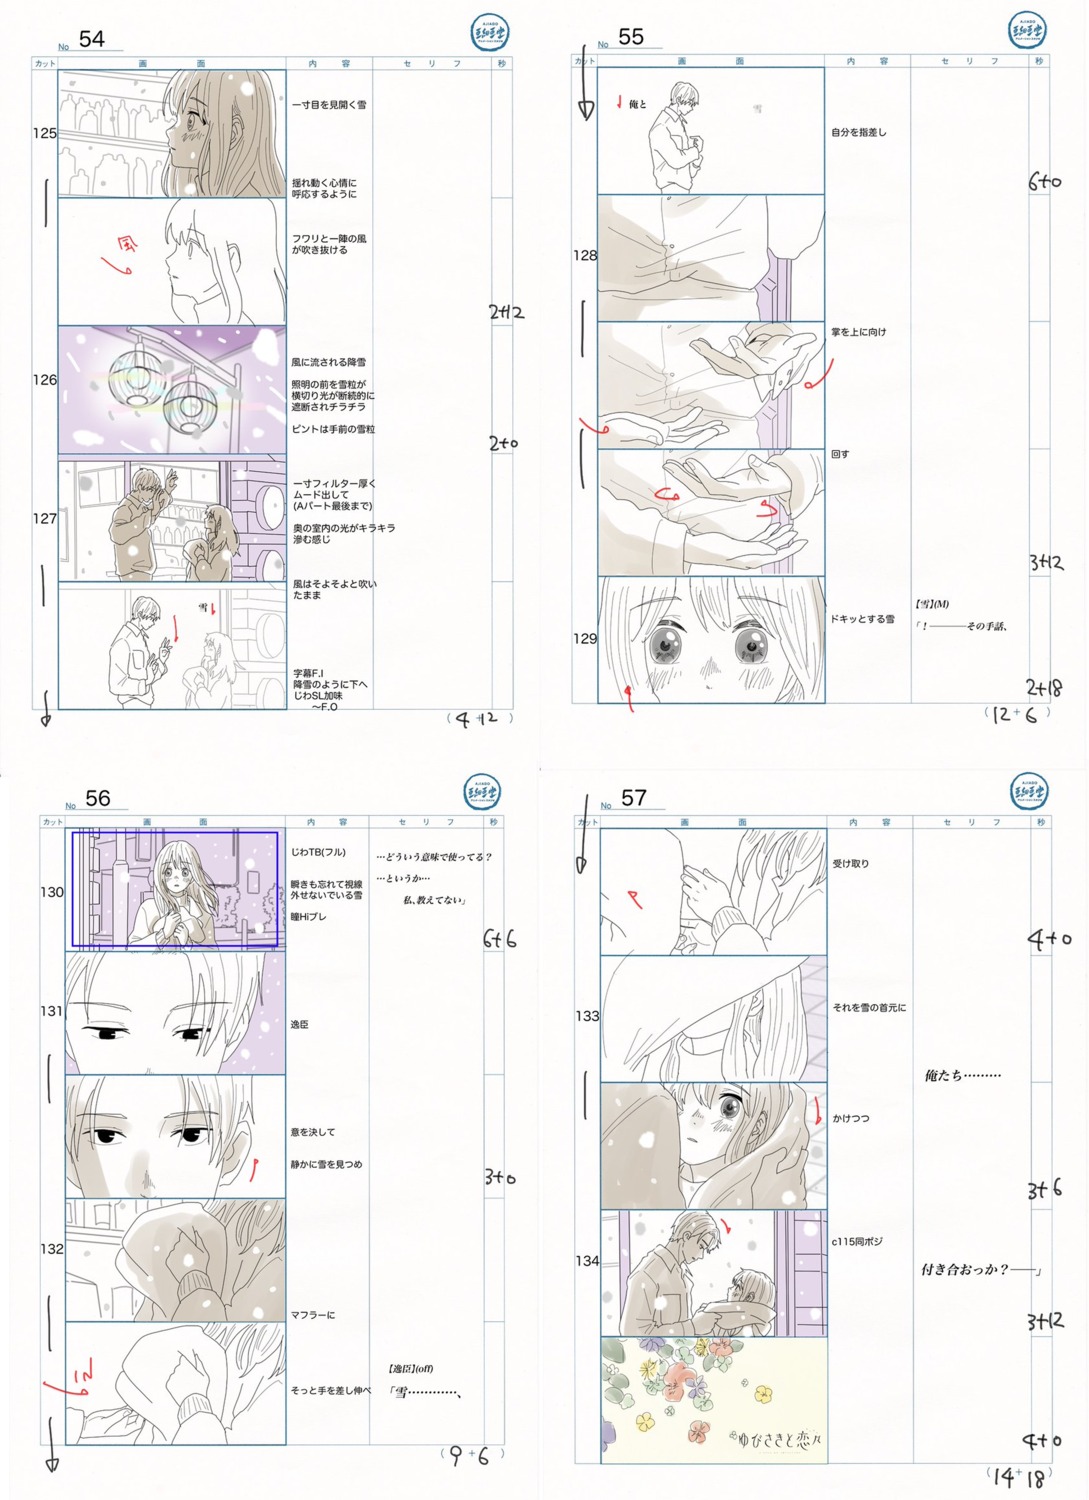 production_materials storyboard yubisaki_to_renren yuta_murano